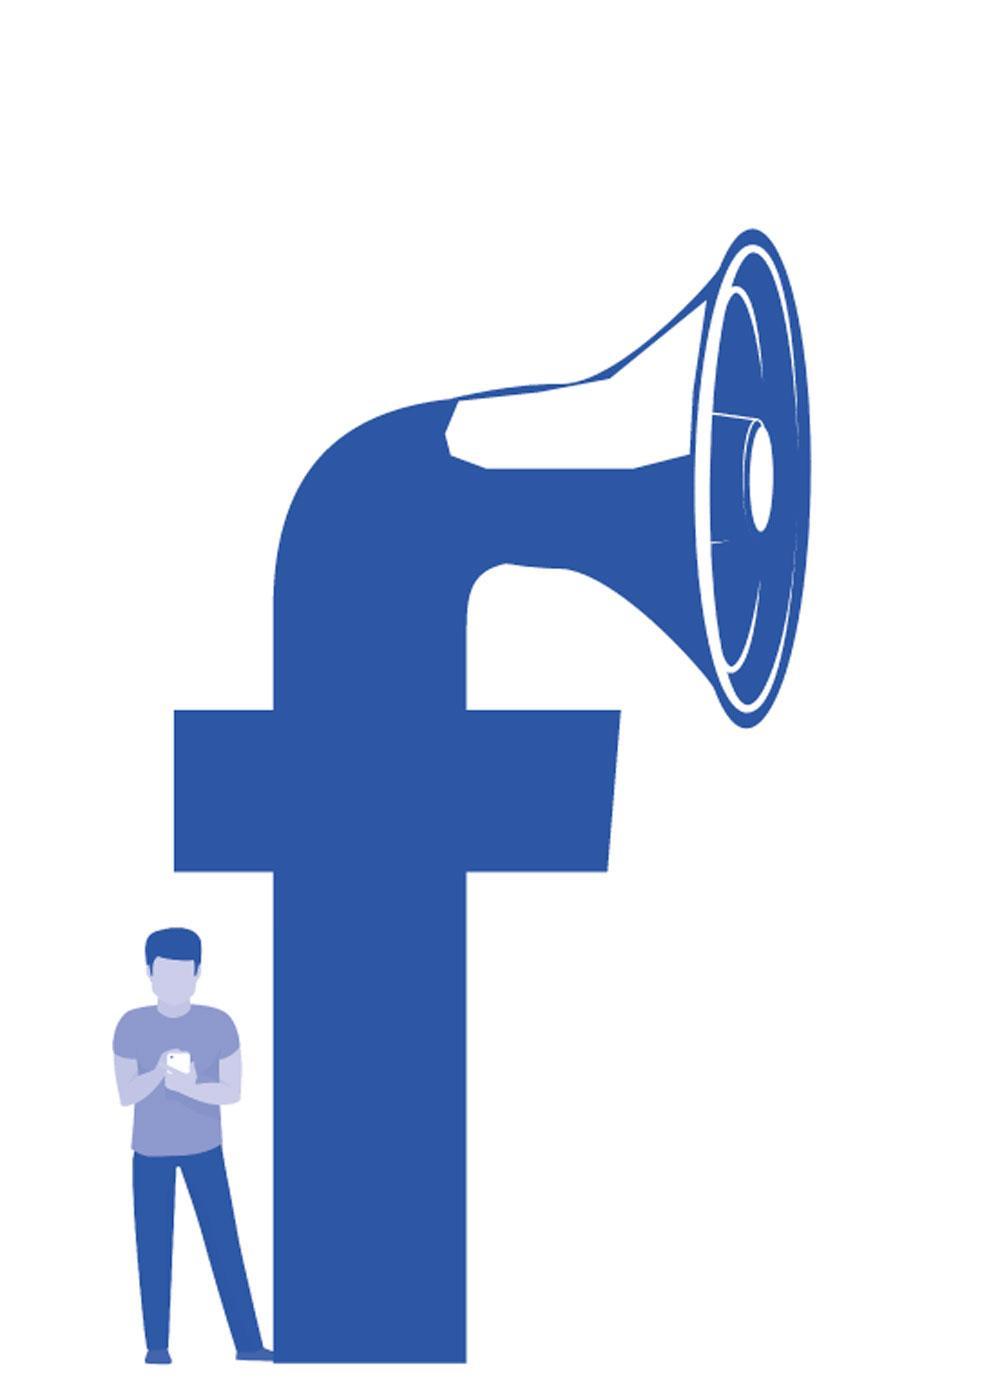 Is Facebook een gevaar voor de democratie? 'Uiteraard worden we níét gemanipuleerd'